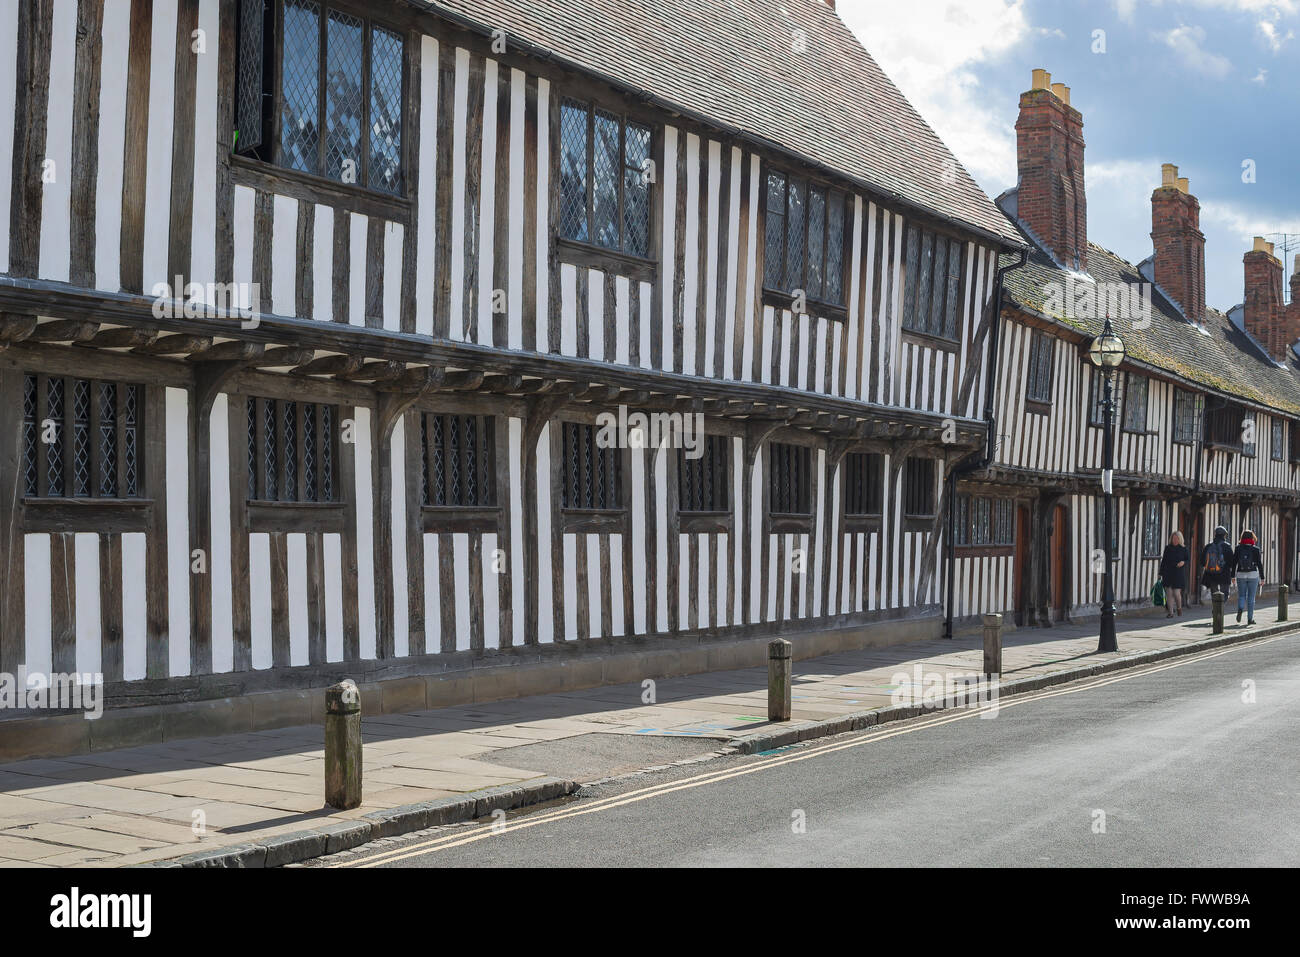 Edificio medievale Inghilterra UK, vista di una fila tipica case a graticcio tardo medievale in Church Street, Stratford Upon Avon, Inghilterra, Regno Unito Foto Stock